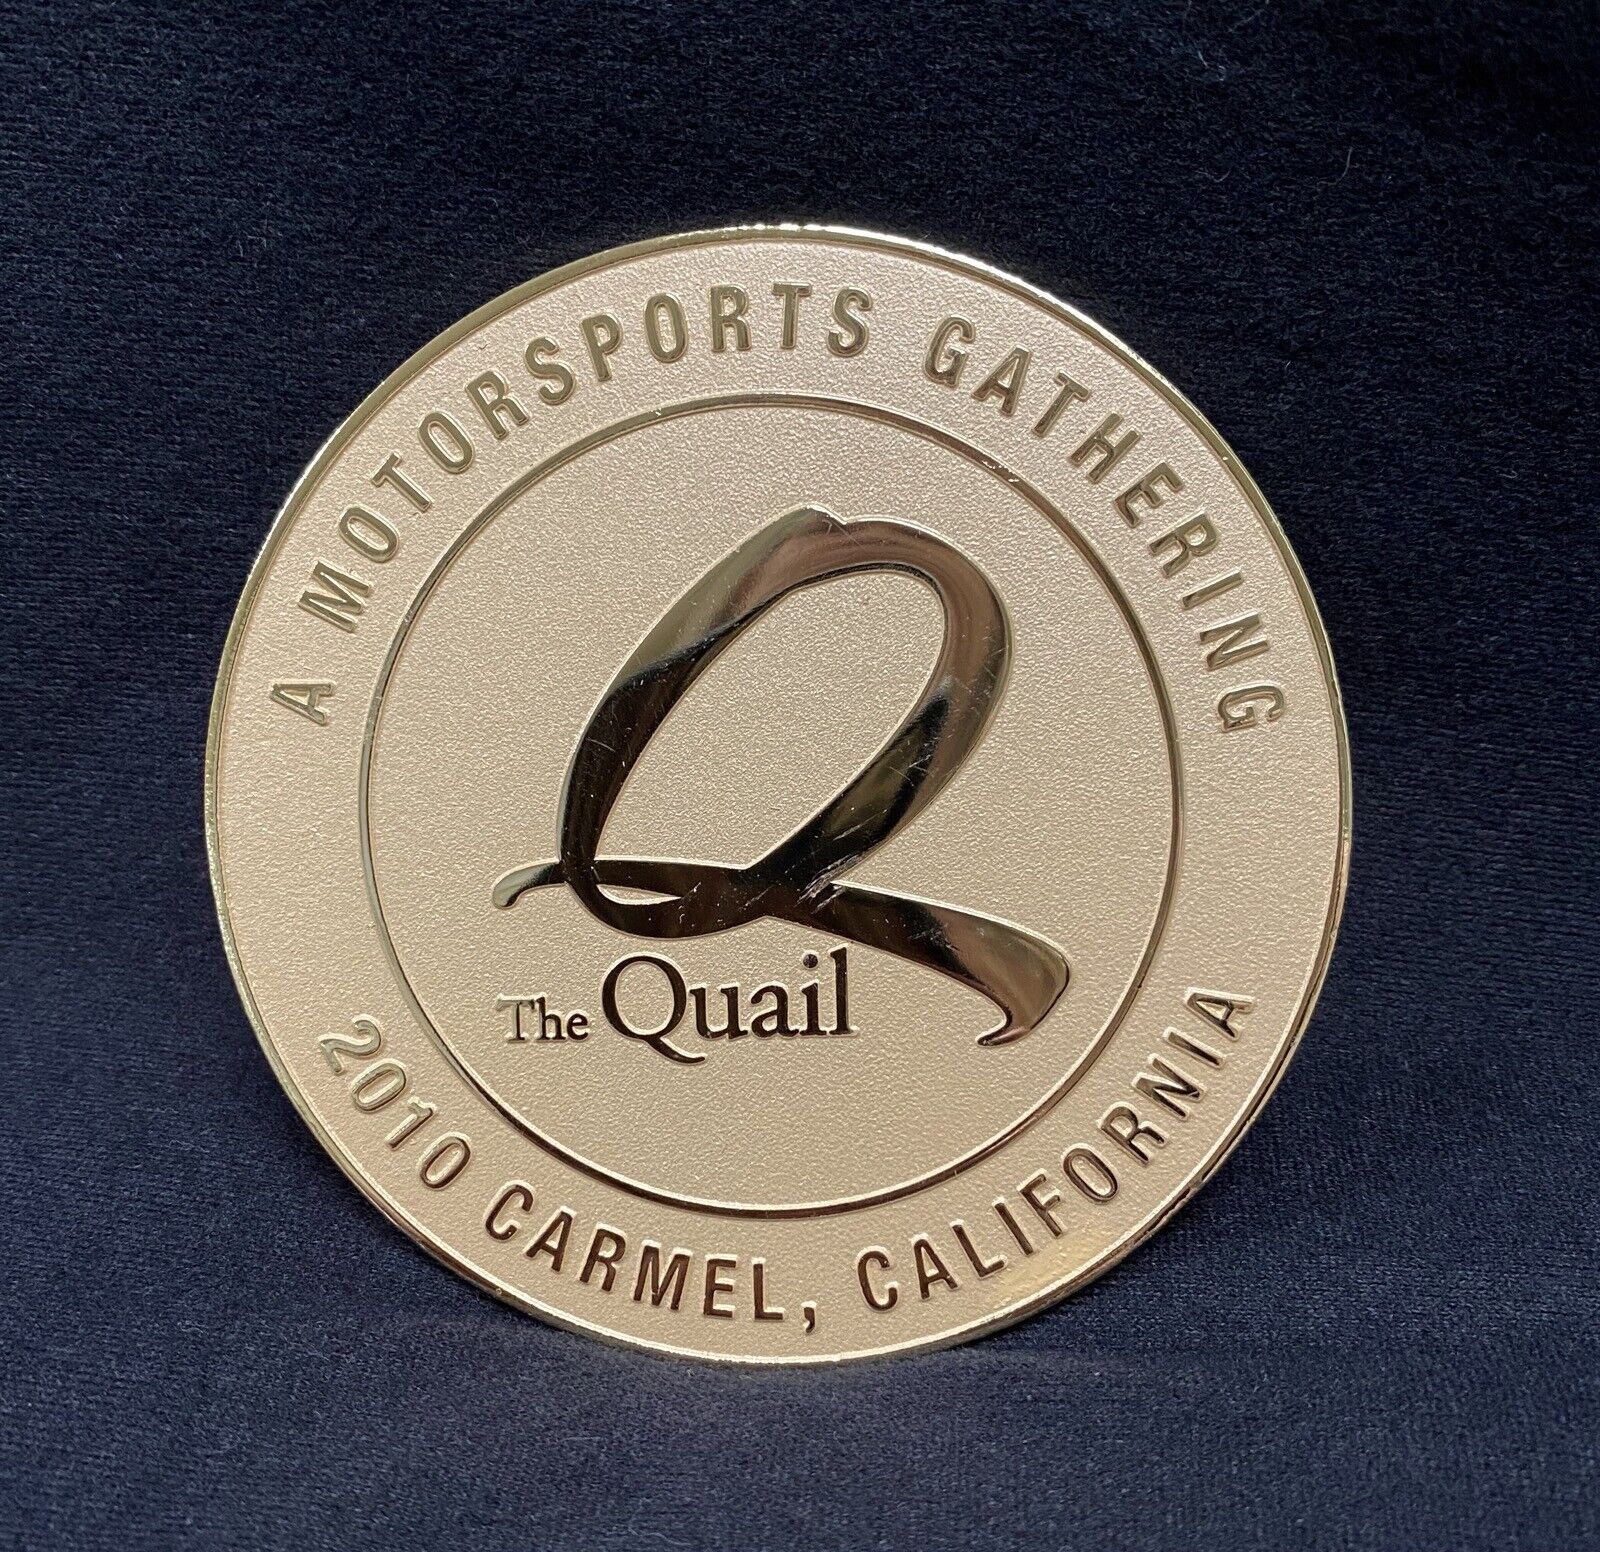 2010 The Quail Motorsports Gathering Large Medallion EXC